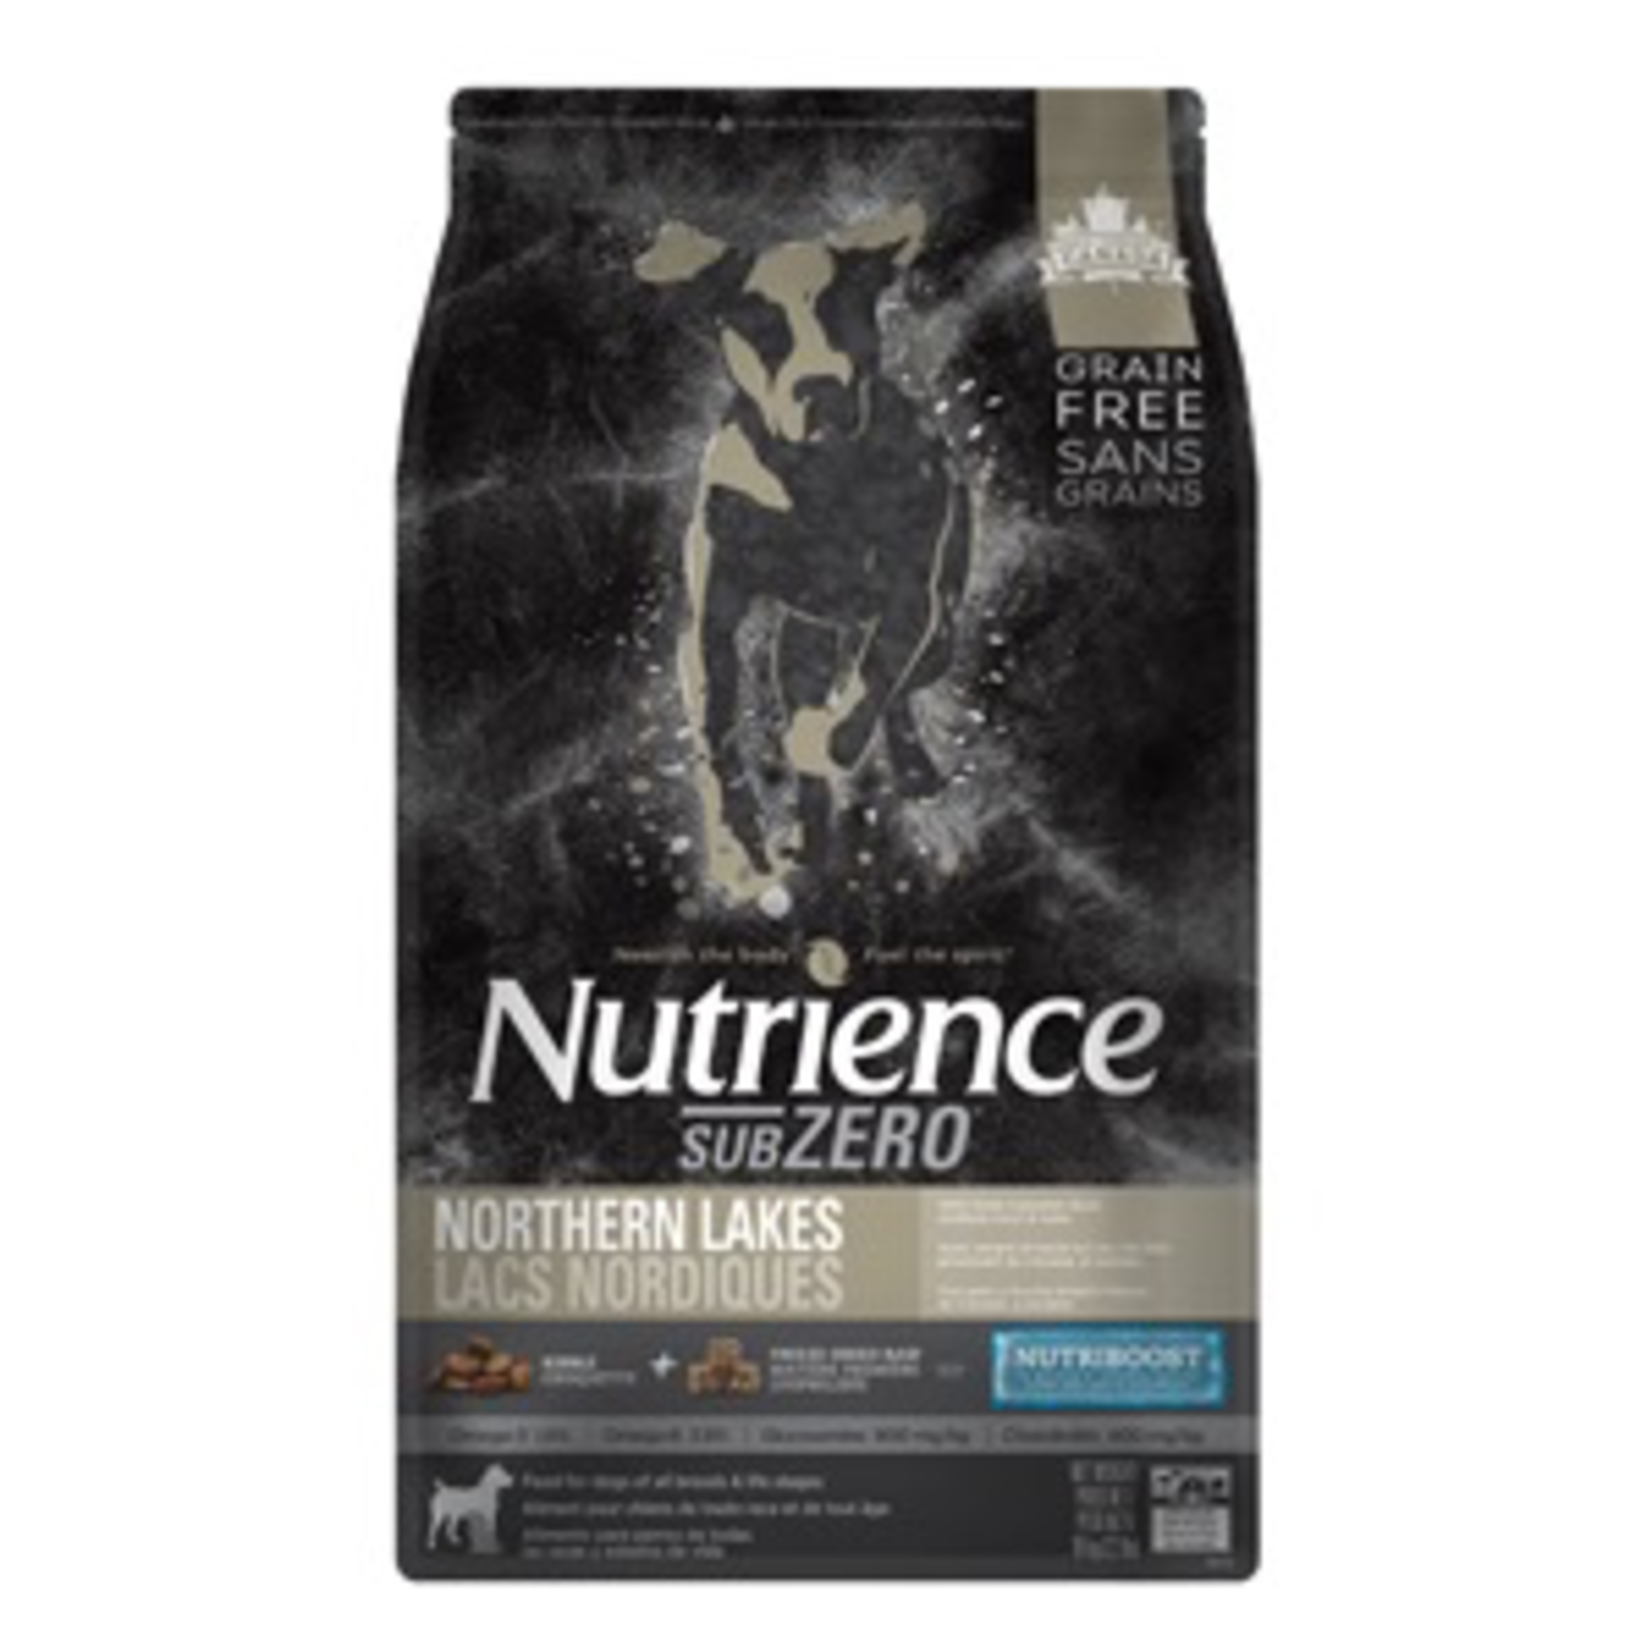 NUTRIENCE Nutrience Subzero  - Northern Lakes - 10.0kg